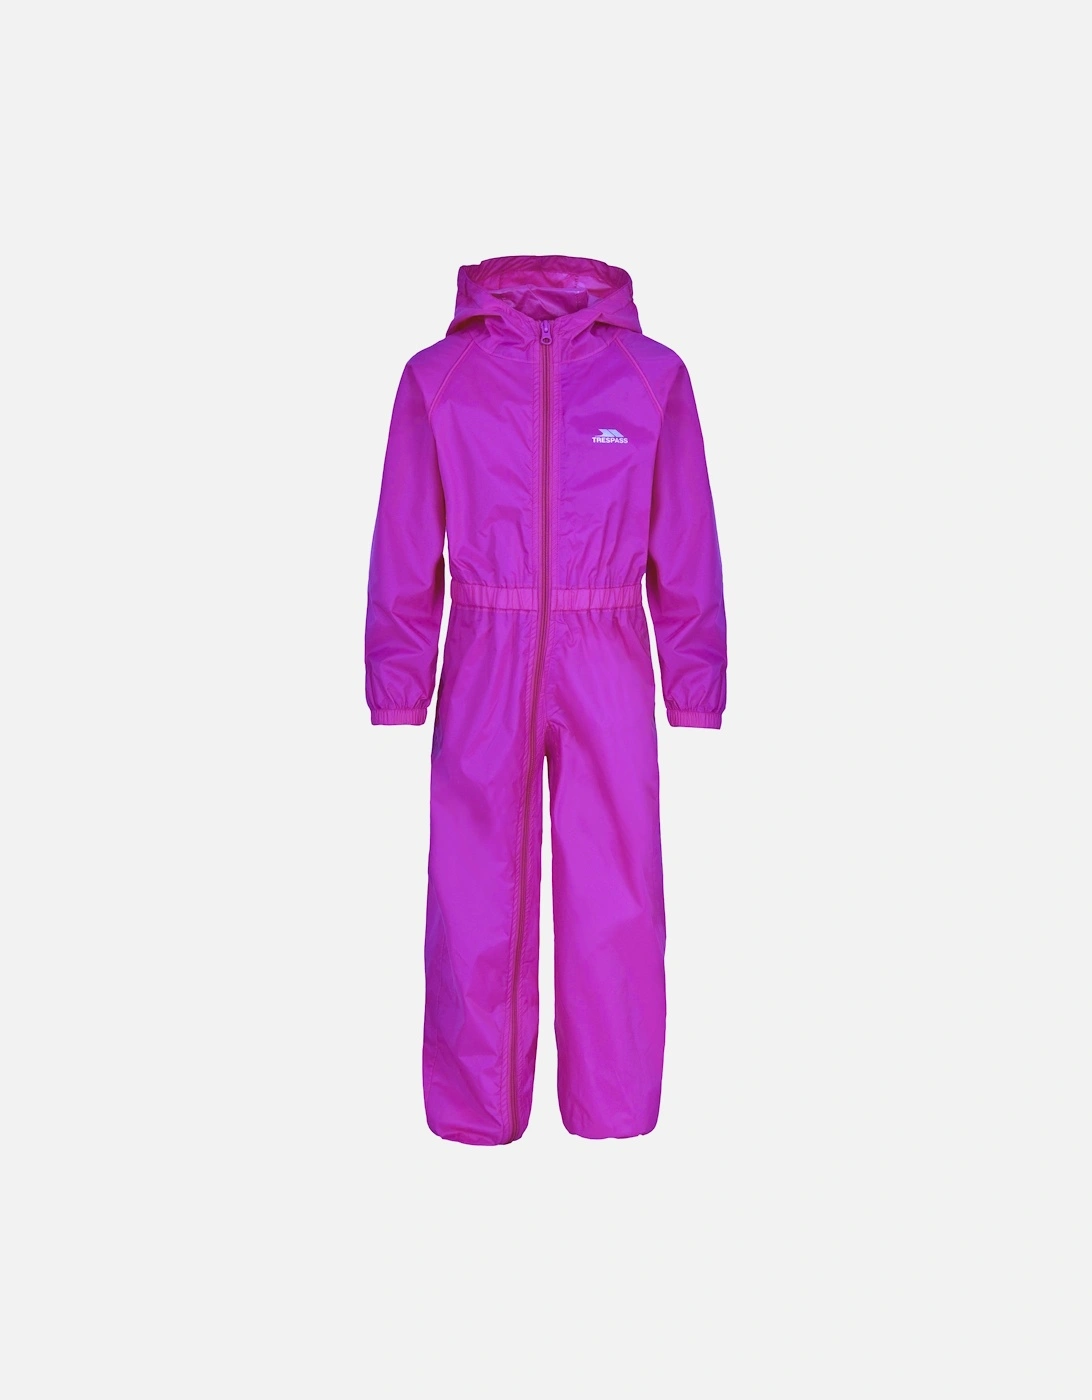 Childrens/Kids Button Rain Suit, 4 of 3